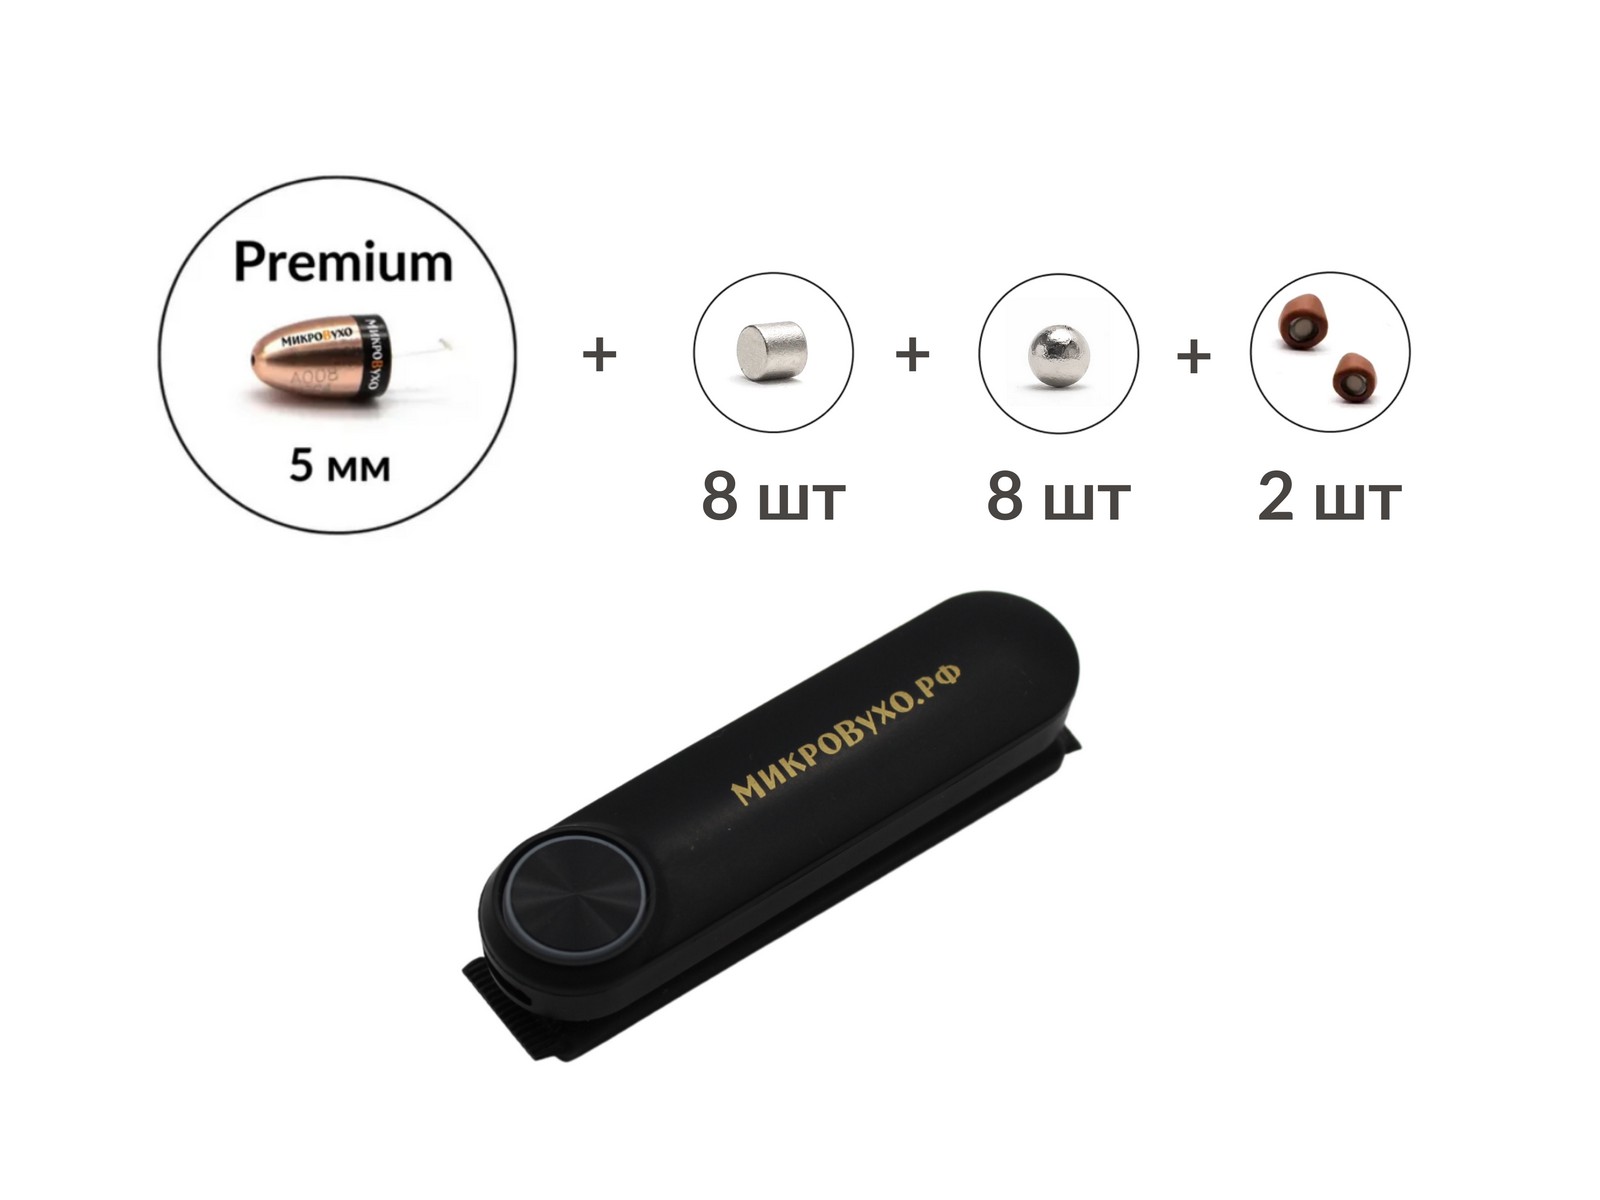 Универсальная гарнитура Bluetooth Box Standard Plus с капсулой Premium и магнитами 2 мм - изображение